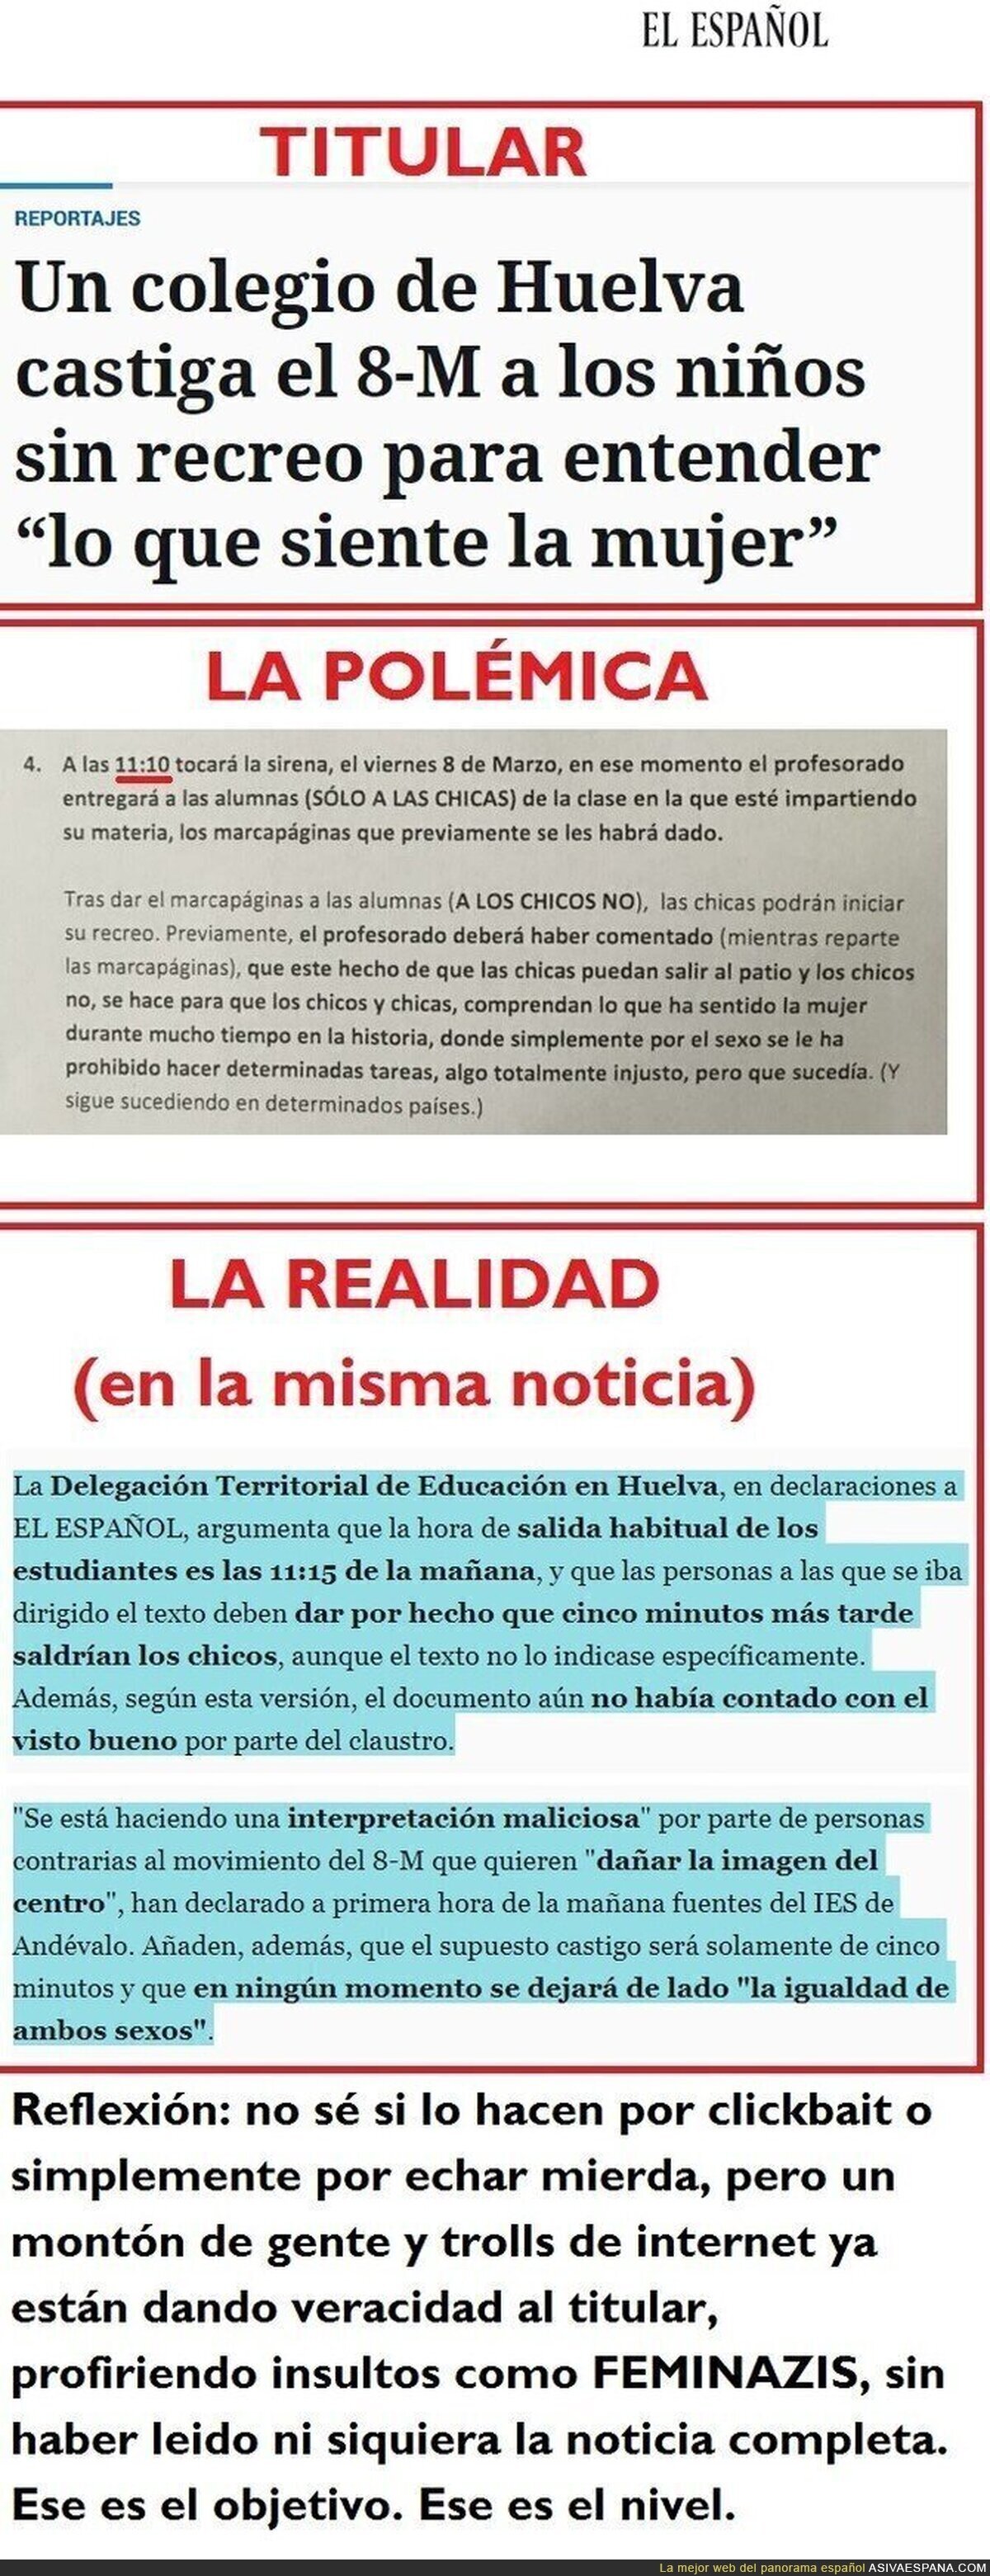 NO, ningún niño será castigado sin recreo en Huelva el día de la mujer. Fake News es tres actos en el digital de Pedro J. Ramírez.